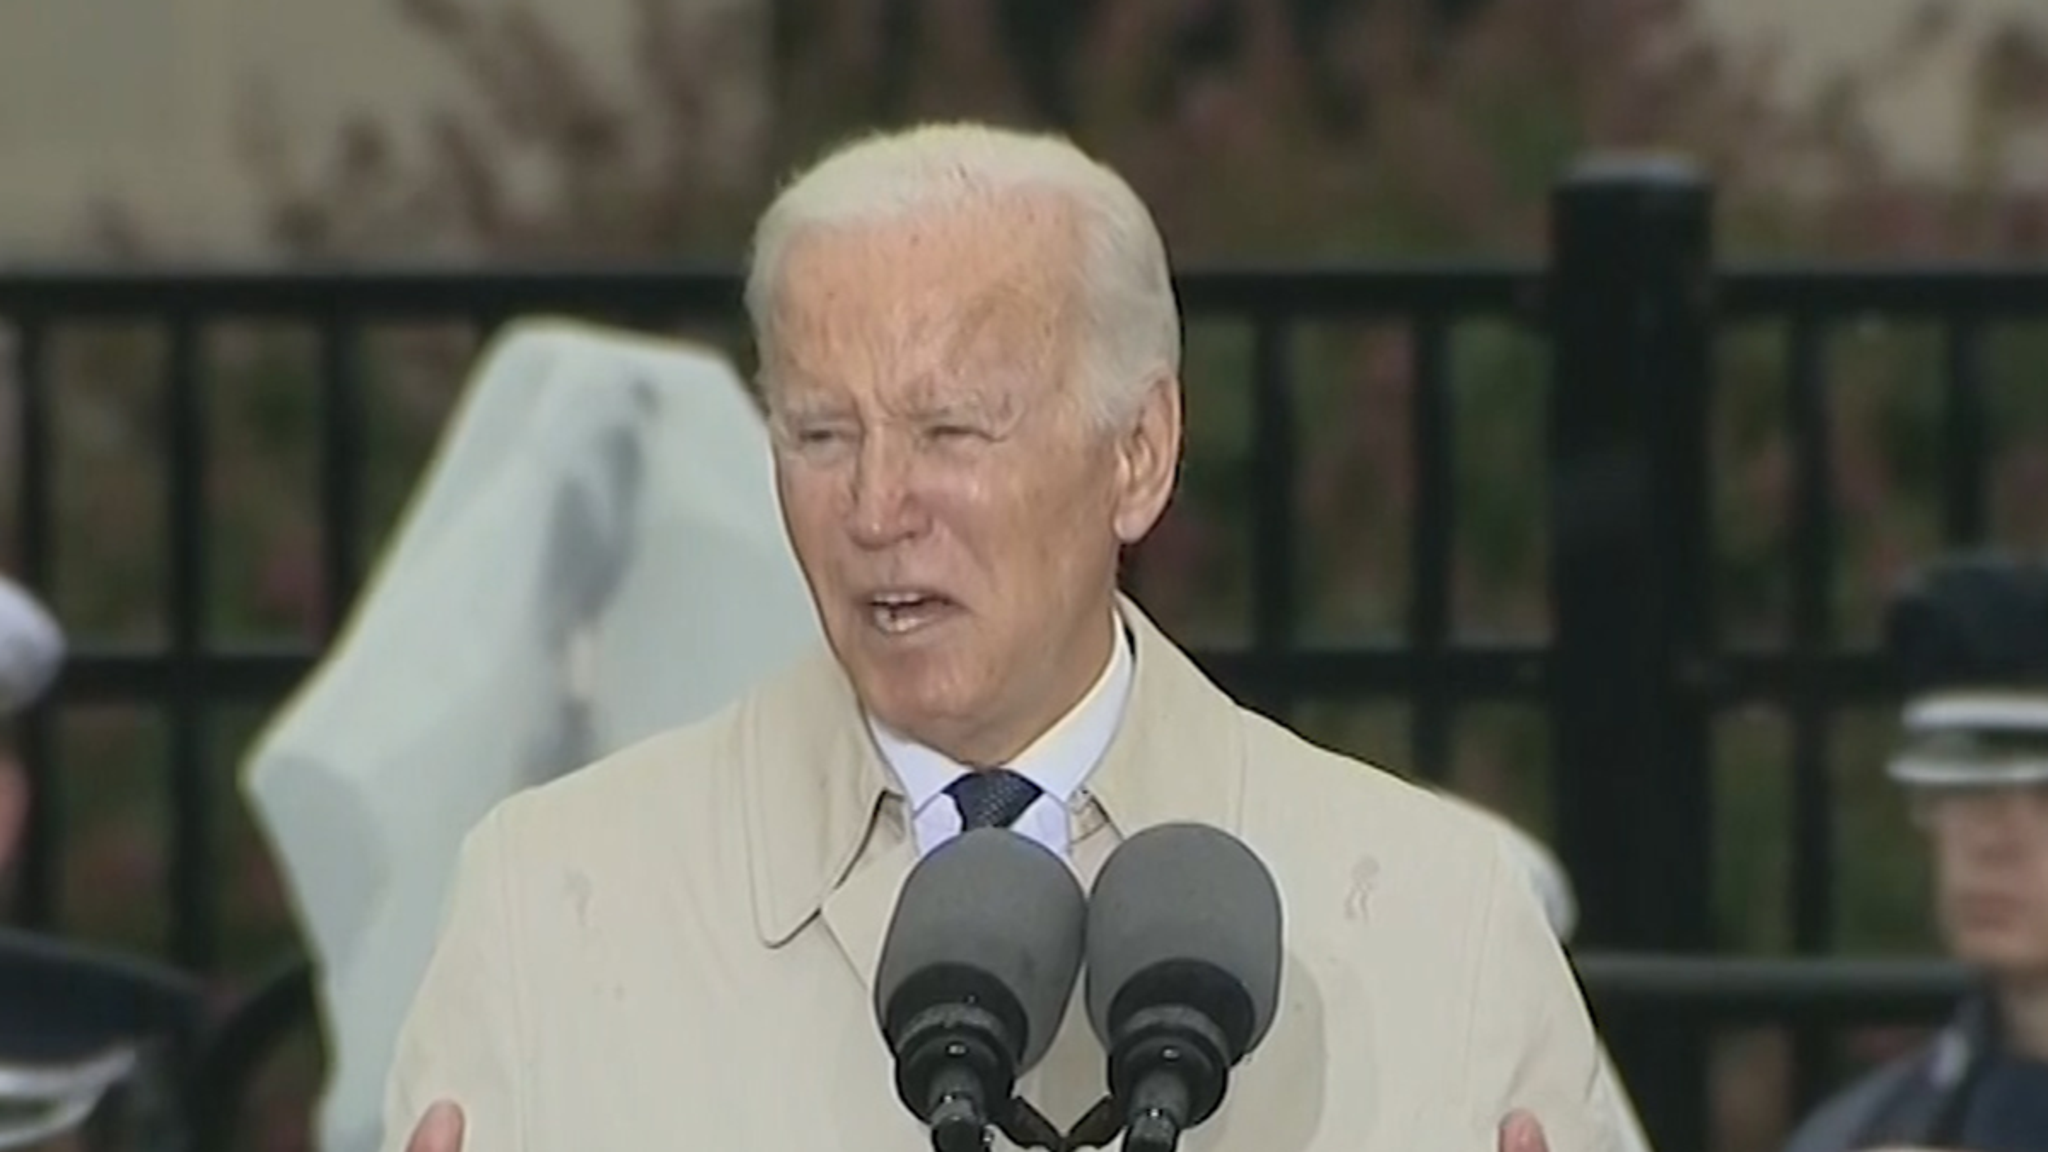 President Biden quotes Queen Elizabeth in his 9/11 speech